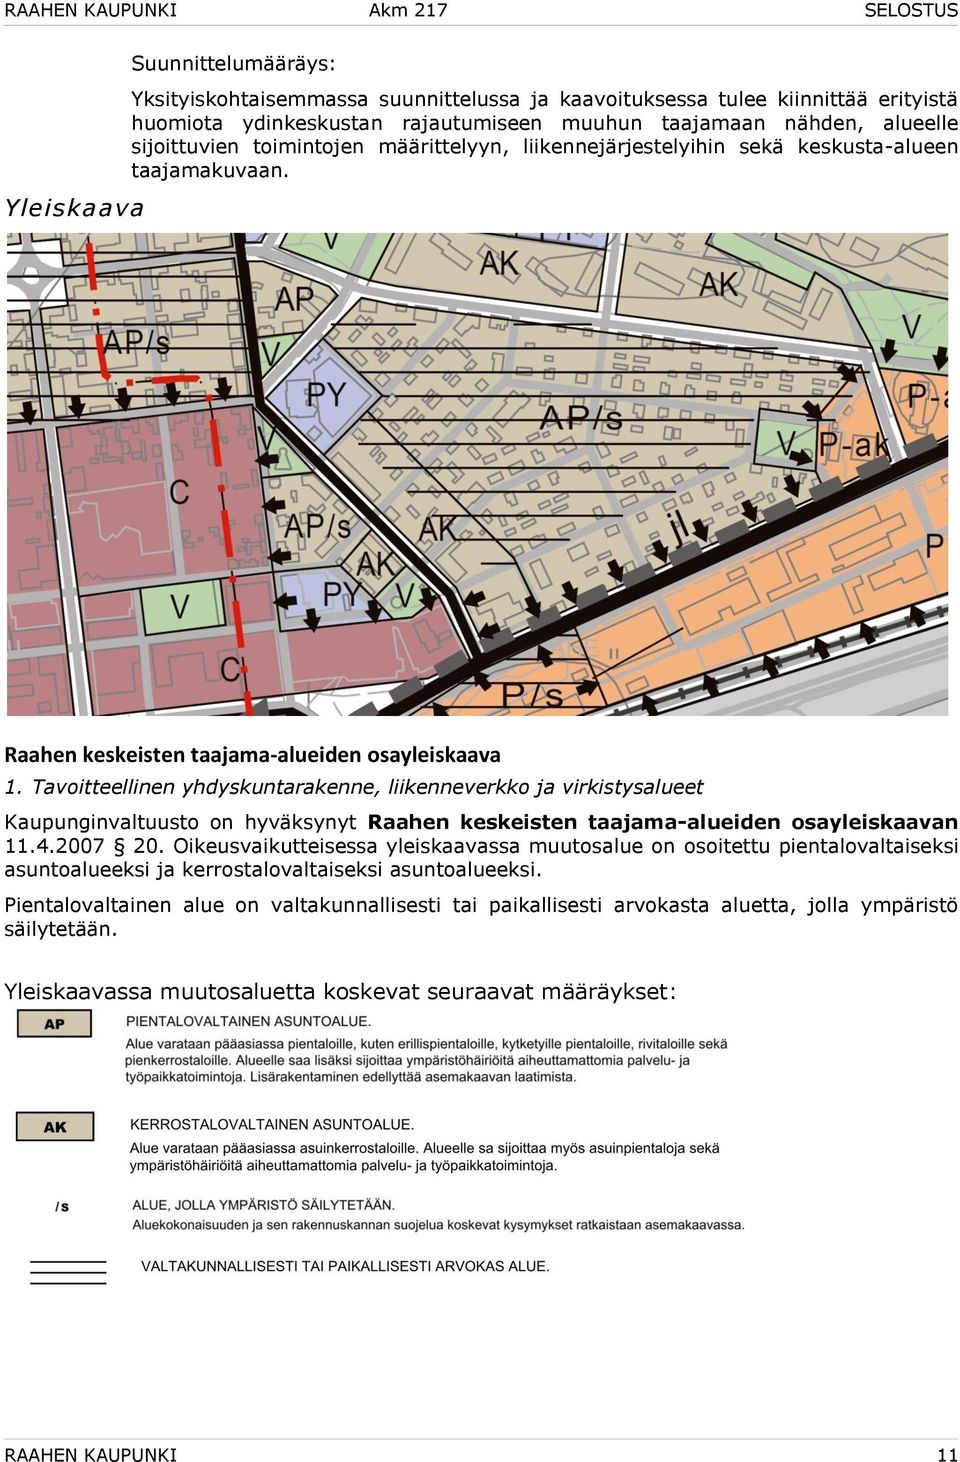 Tavoitteellinen yhdyskuntarakenne, liikenneverkko ja virkistysalueet Kaupunginvaltuusto on hyväksynyt Raahen keskeisten taajama-alueiden osayleiskaavan 11.4.2007 20.